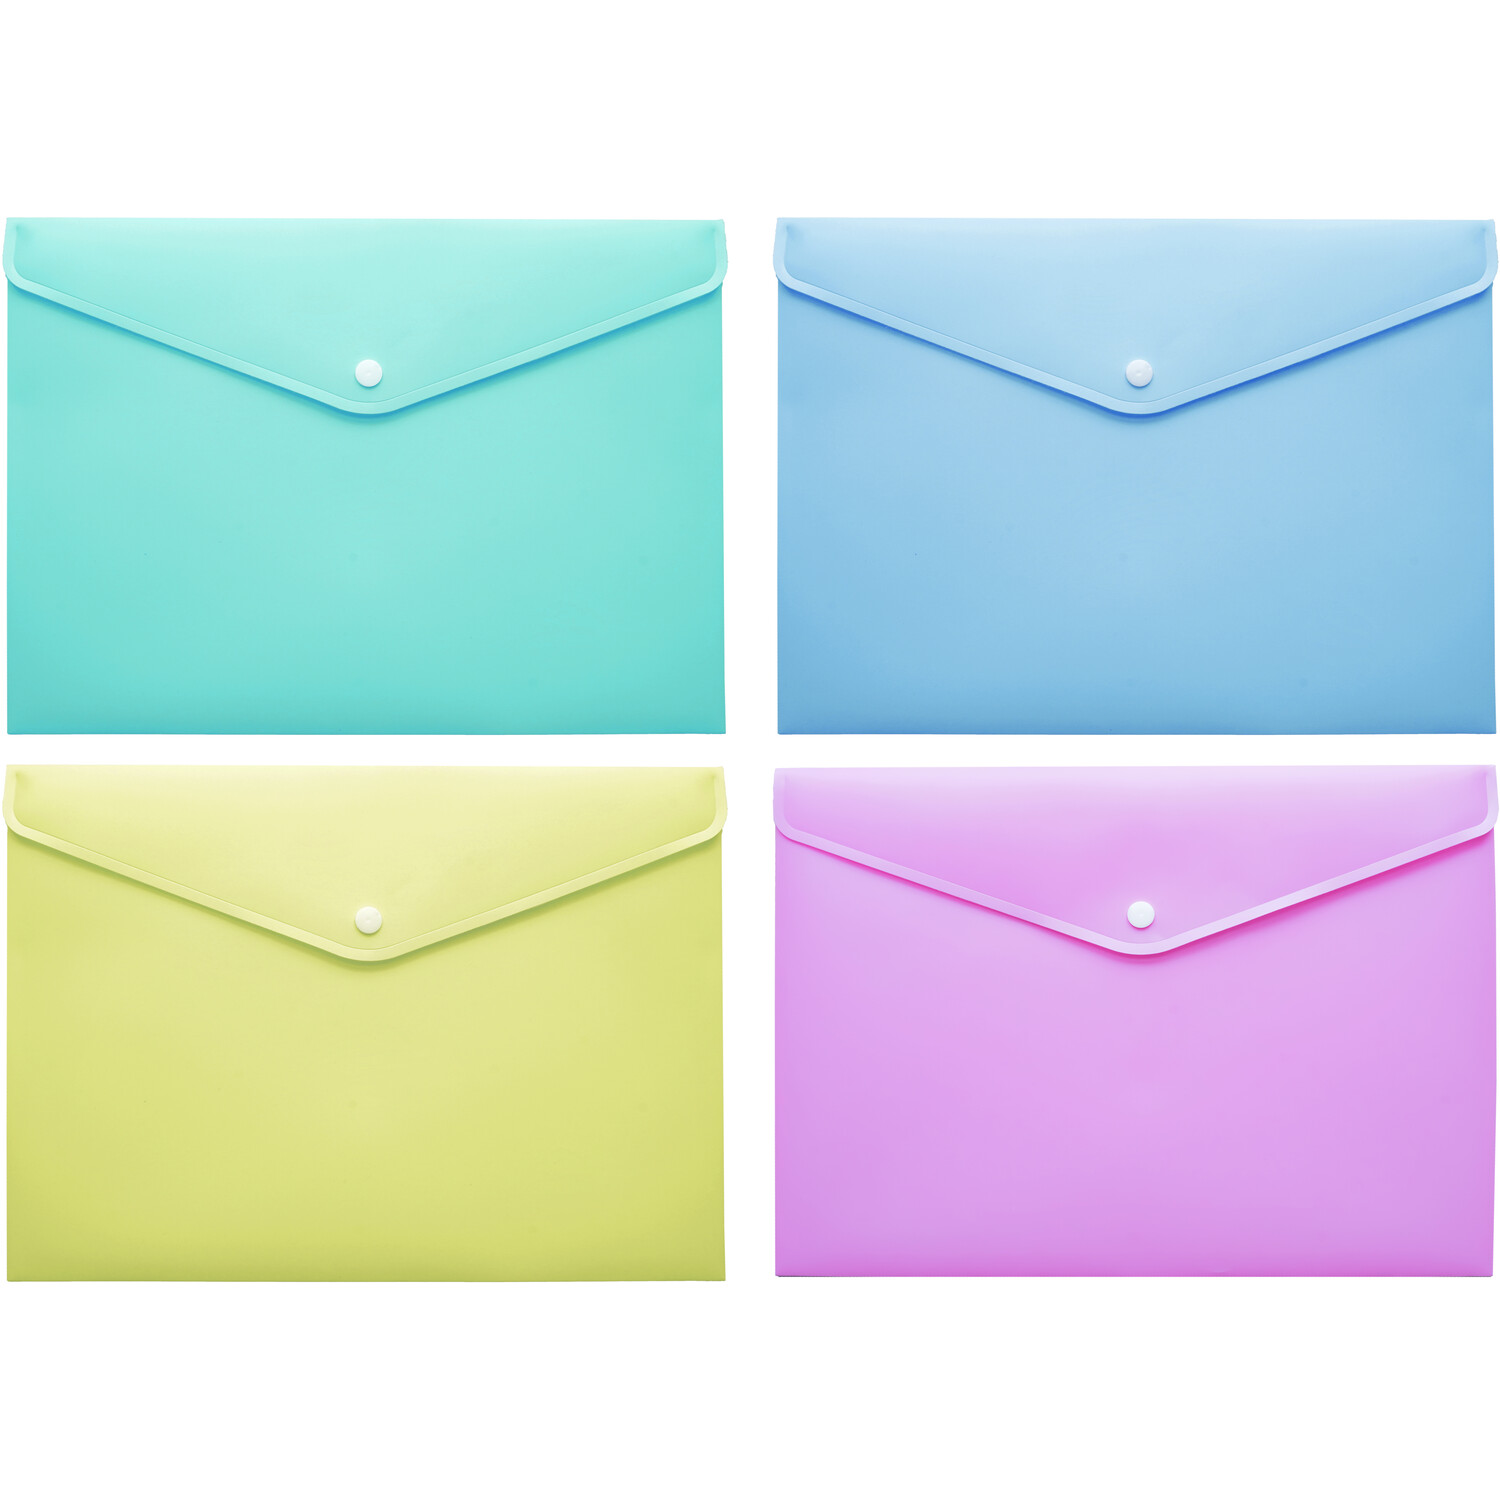 Envelop Folder Pastel Image 1